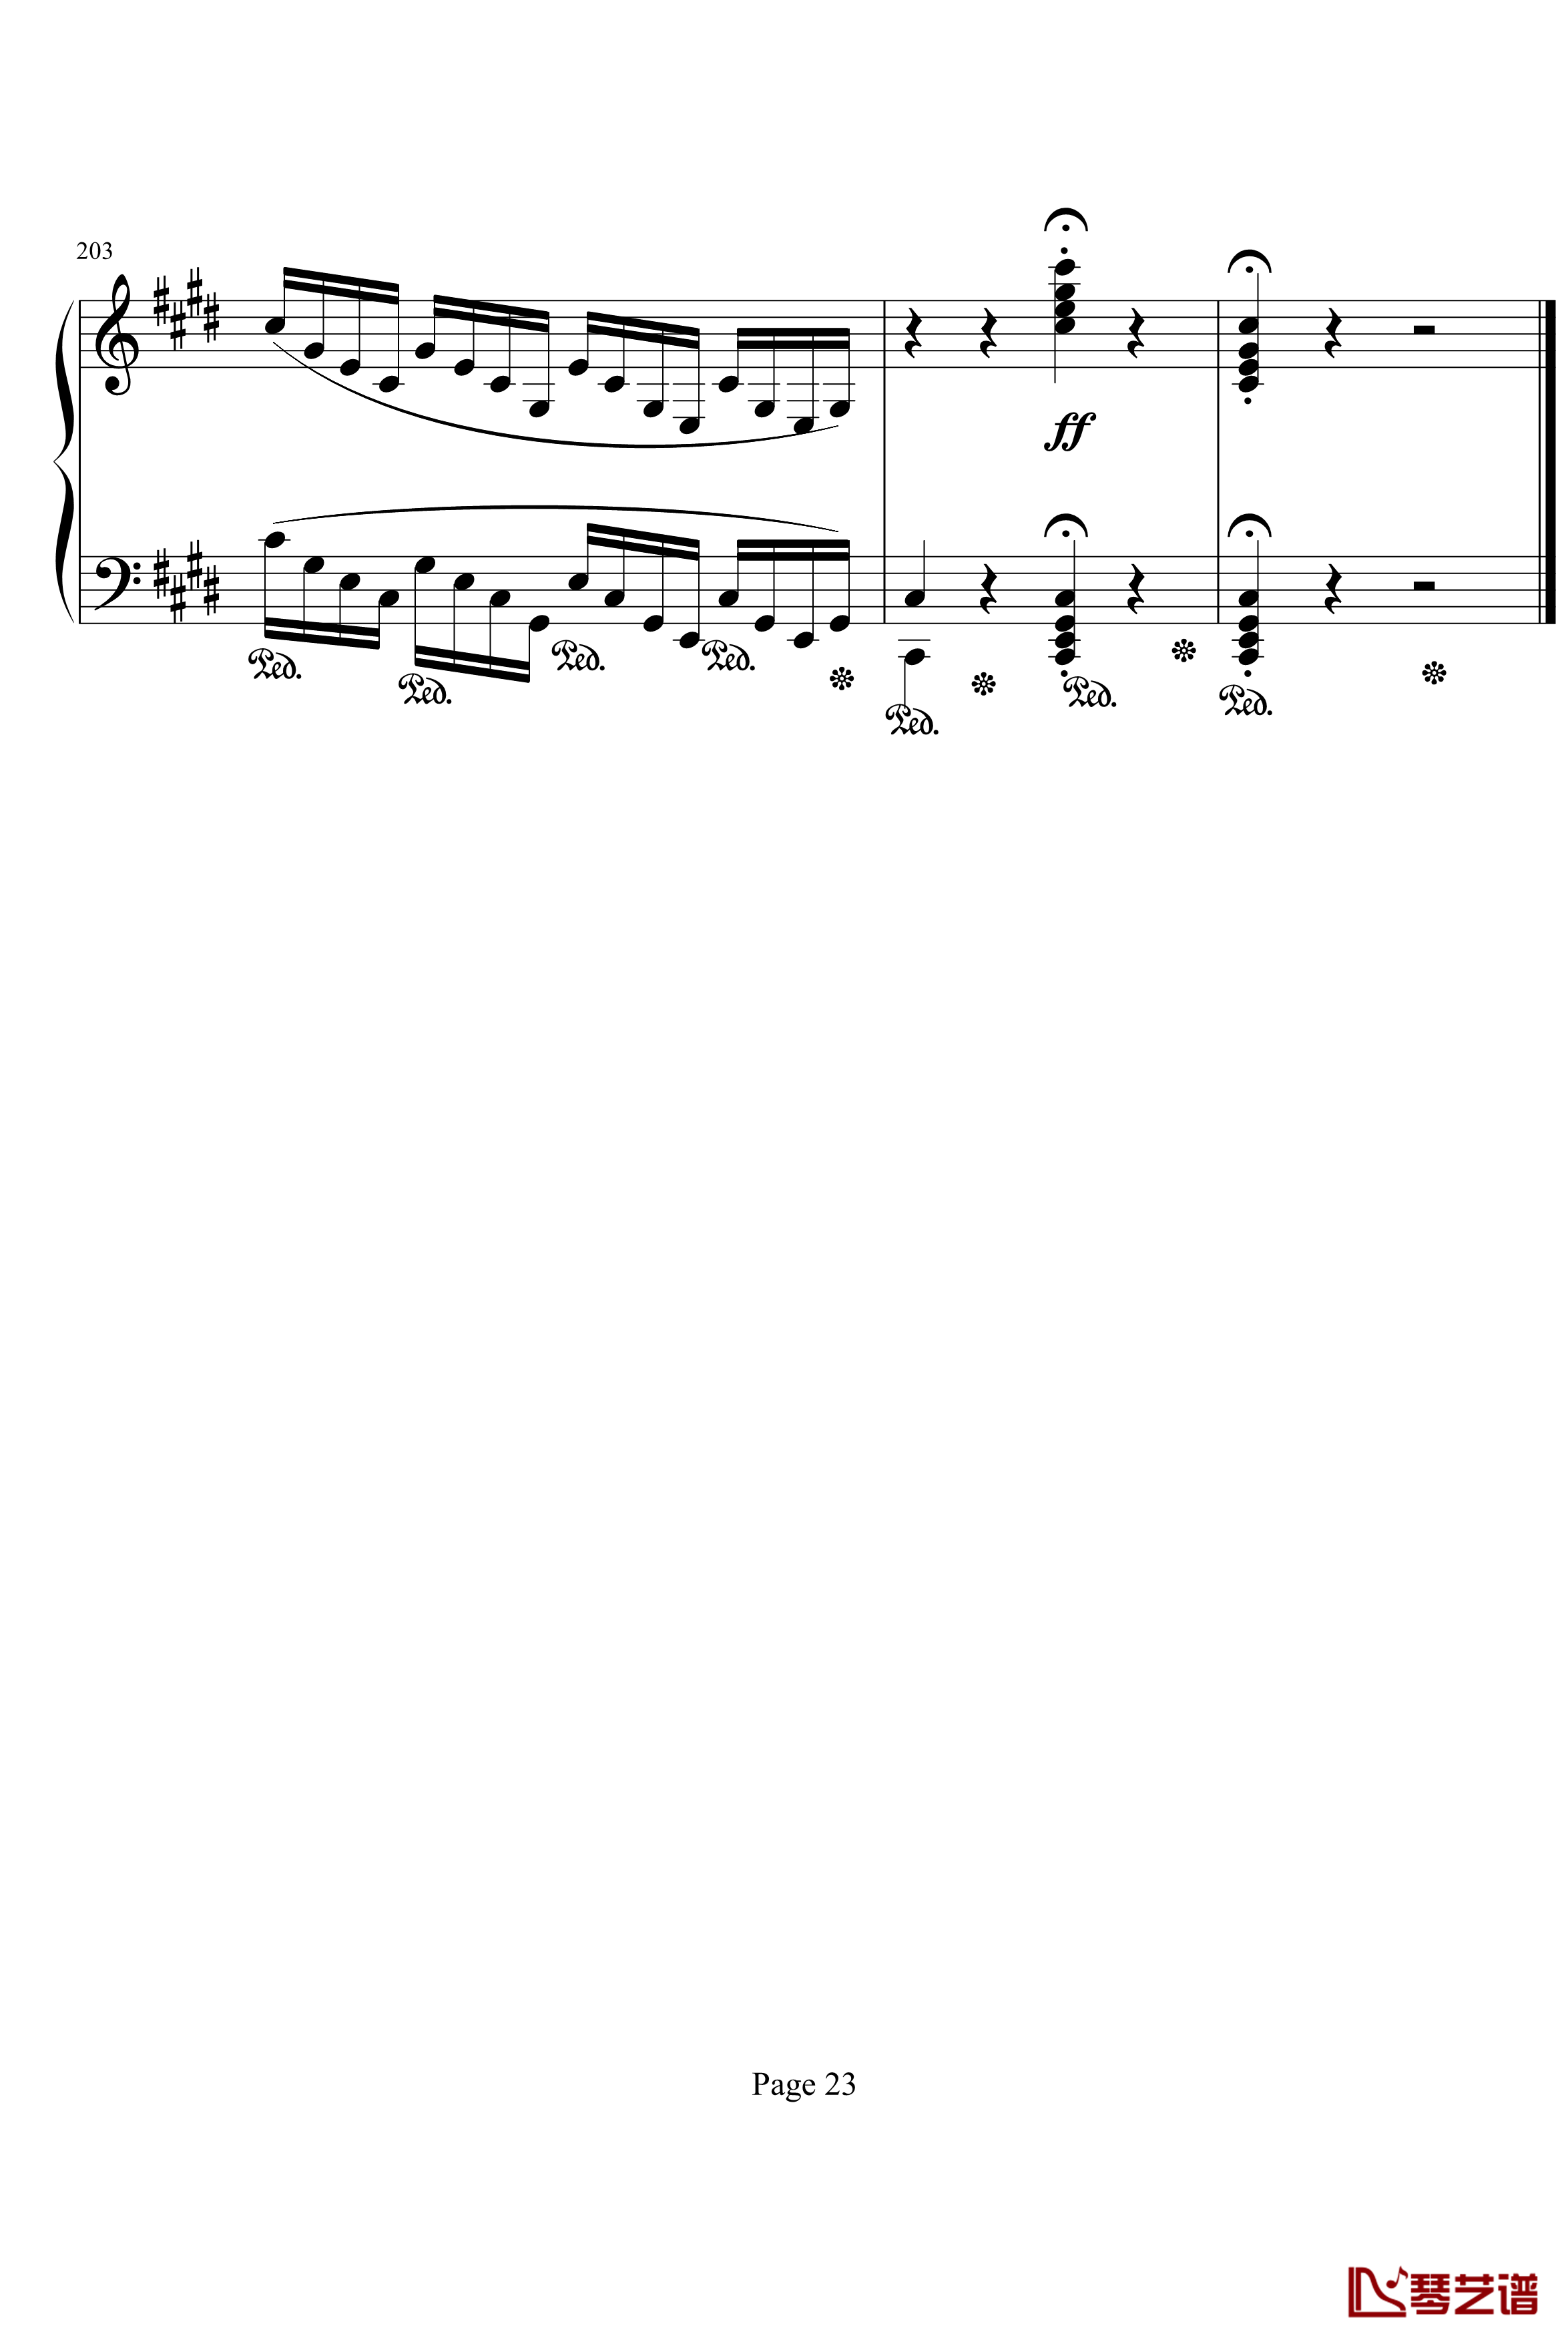 月光第三乐章钢琴谱-贝多芬23